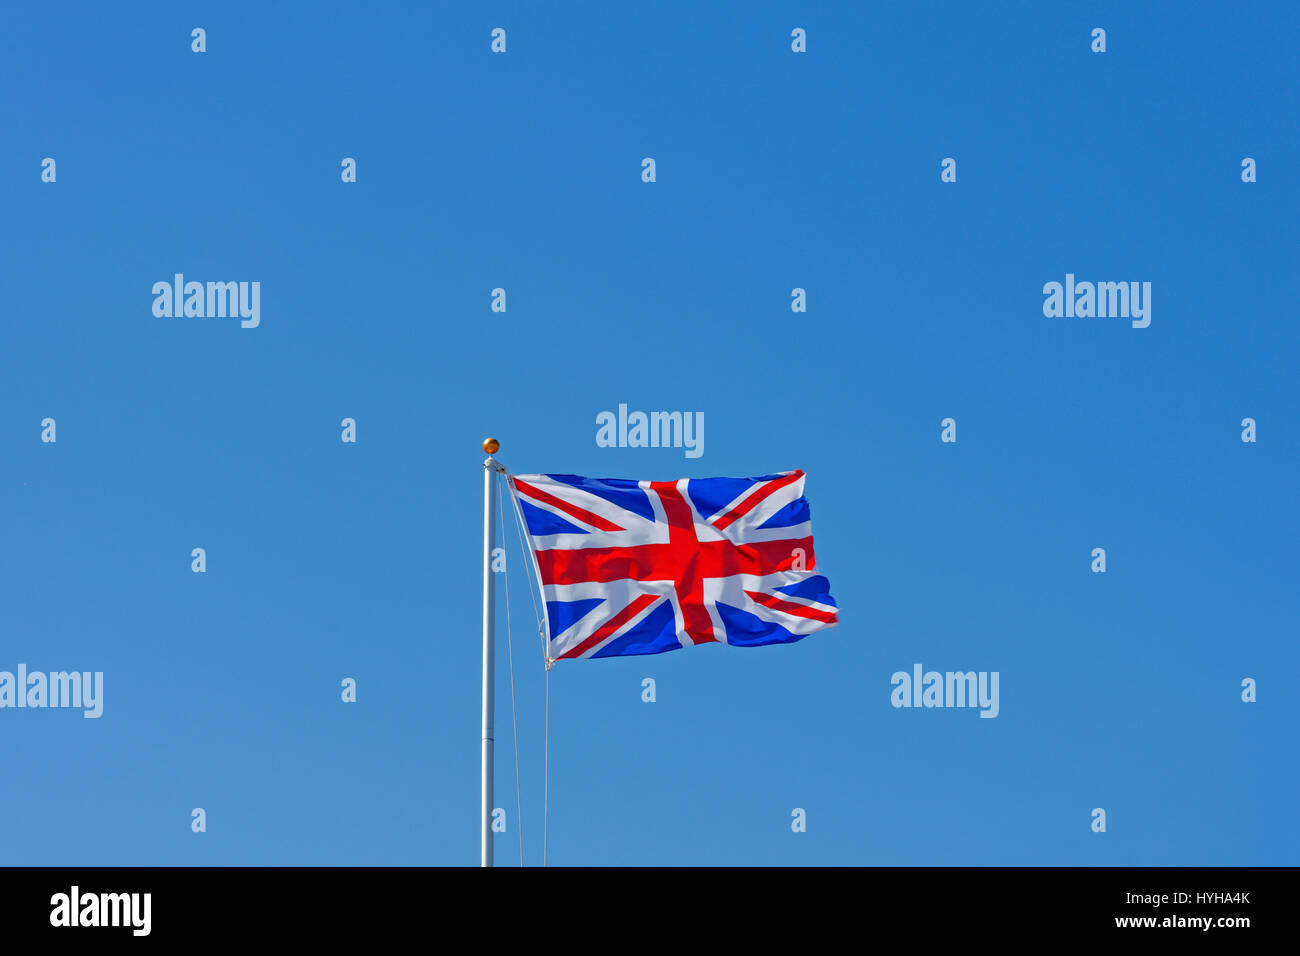 La Union Jack, o unione bandiera, è la bandiera nazionale del Regno Unito. Foto Stock